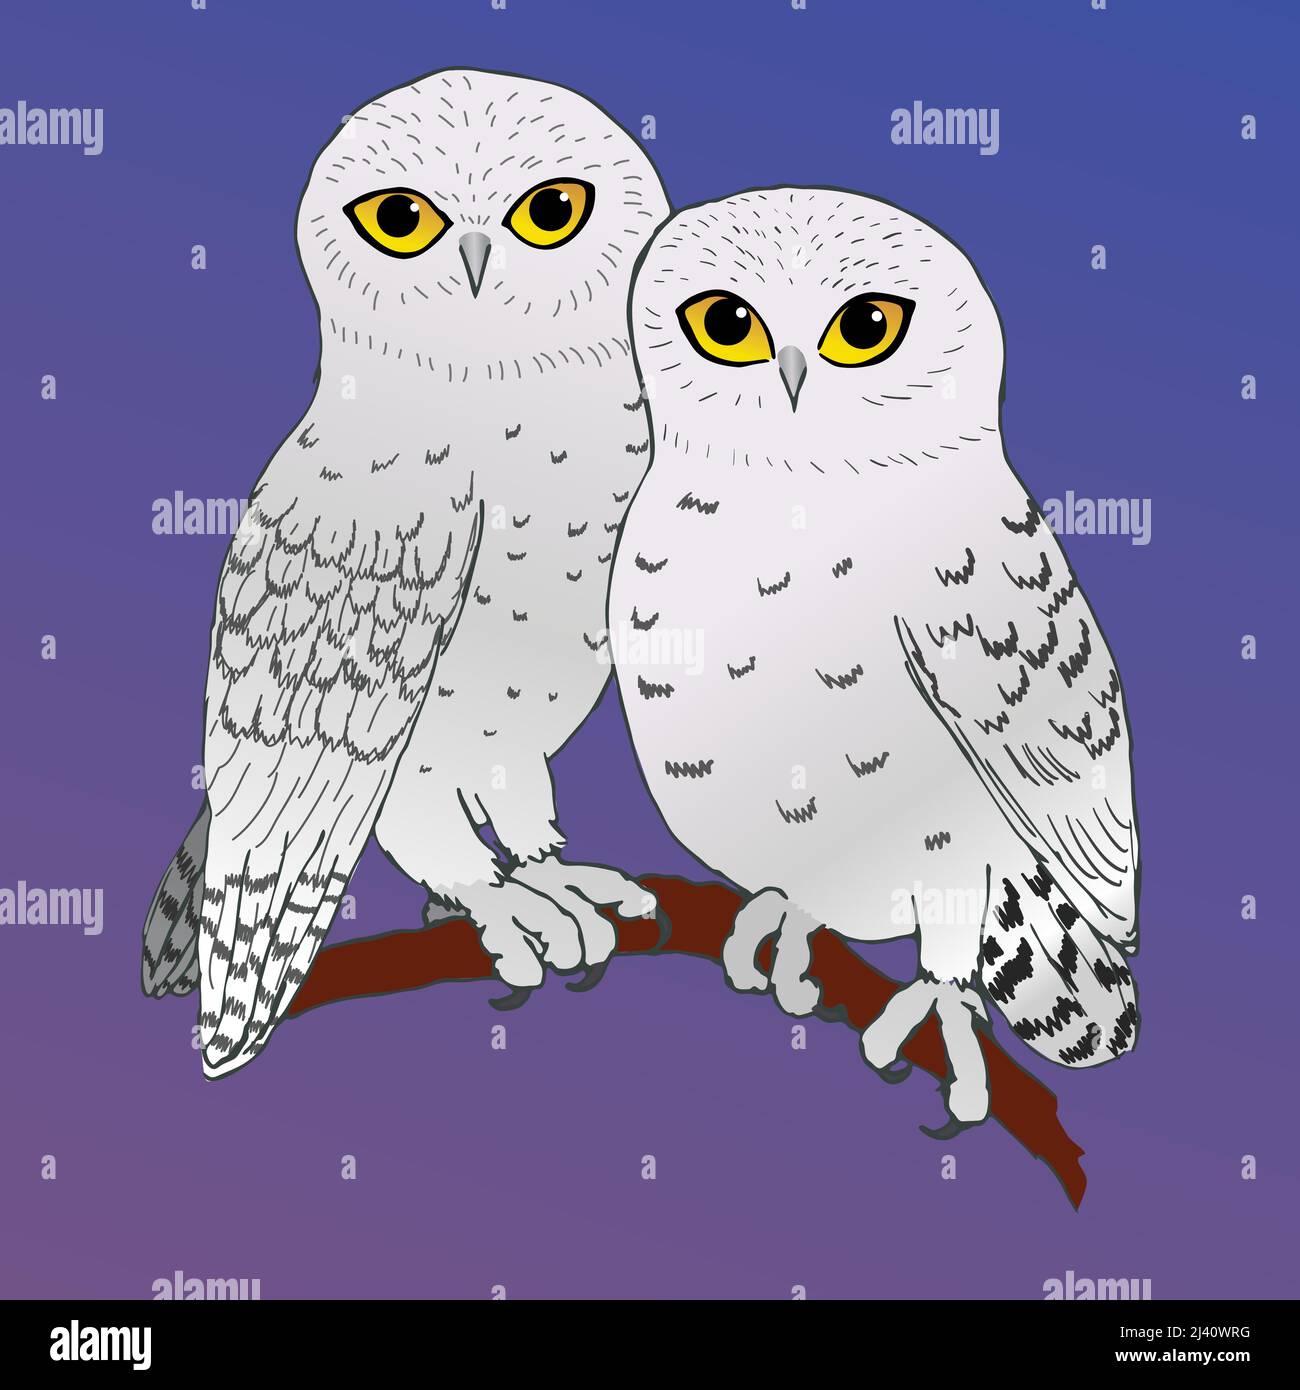 Un'illustrazione vettoriale di due gufi nevosi carini che si siedono vicino intimo insieme. Sono appollaiati su un ramo e lo sfondo è viola e blu Illustrazione Vettoriale